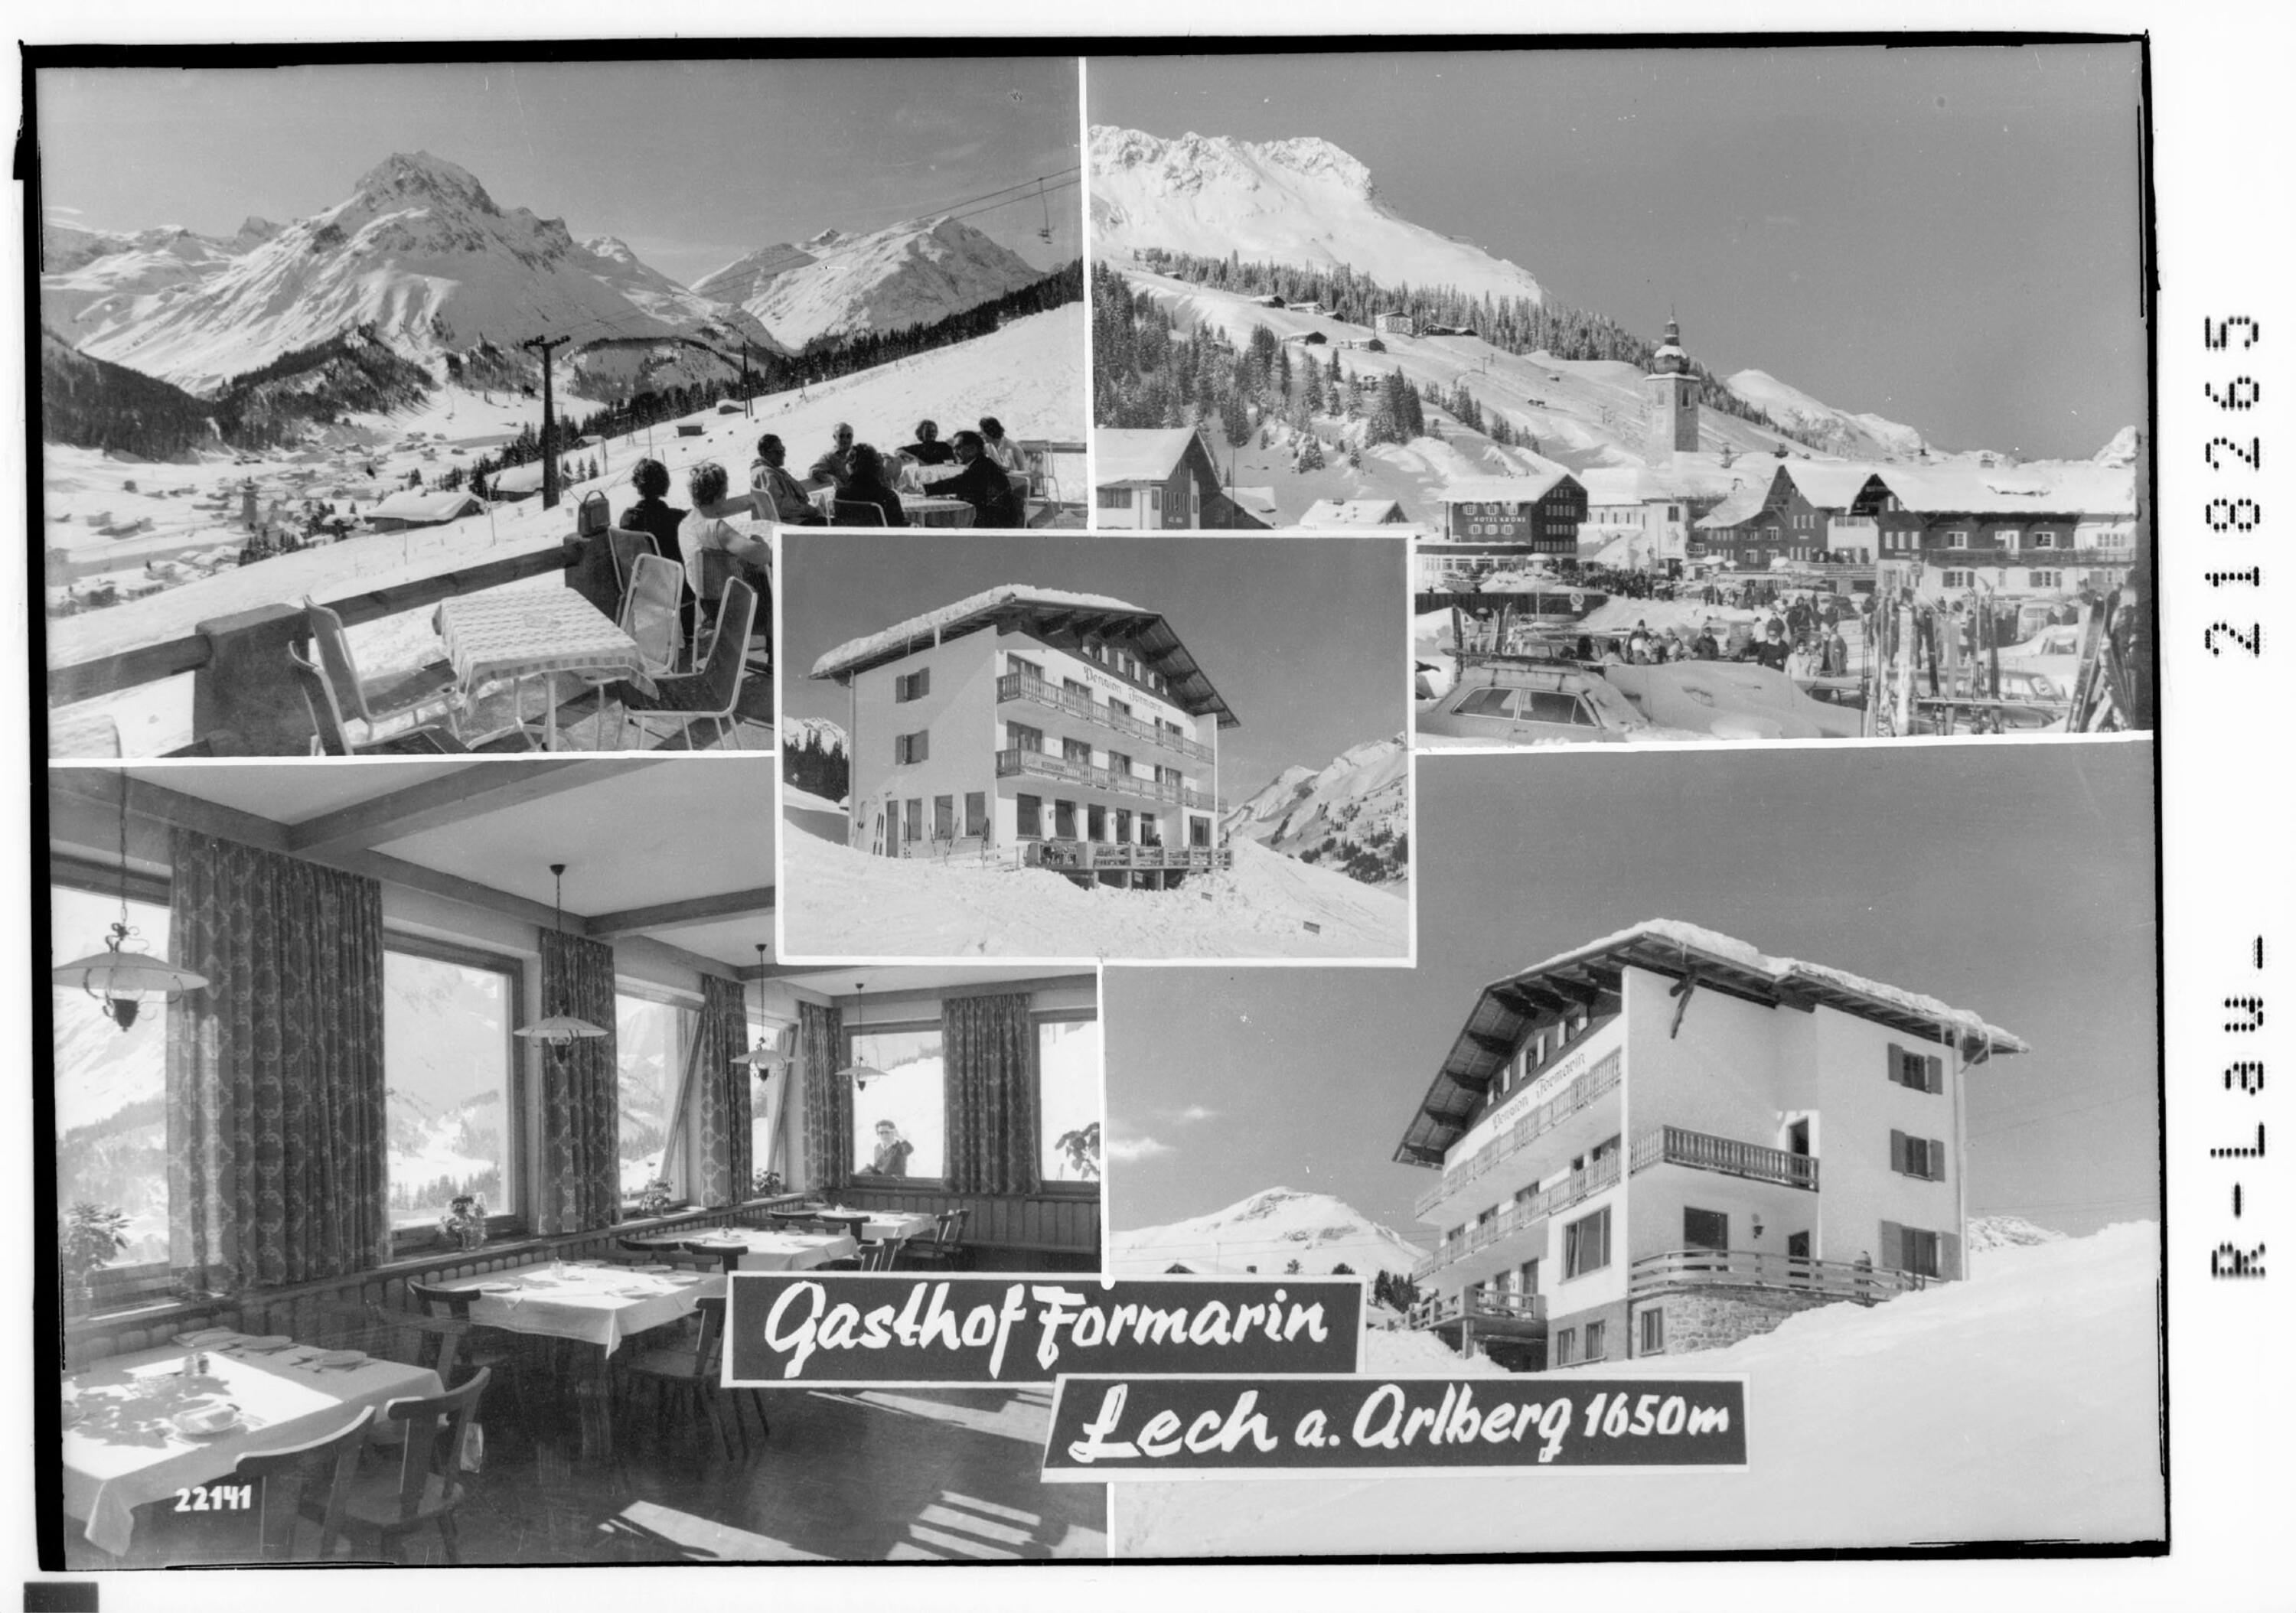 Gasthof Formarin Lech am Arlberg></div>


    <hr>
    <div class=